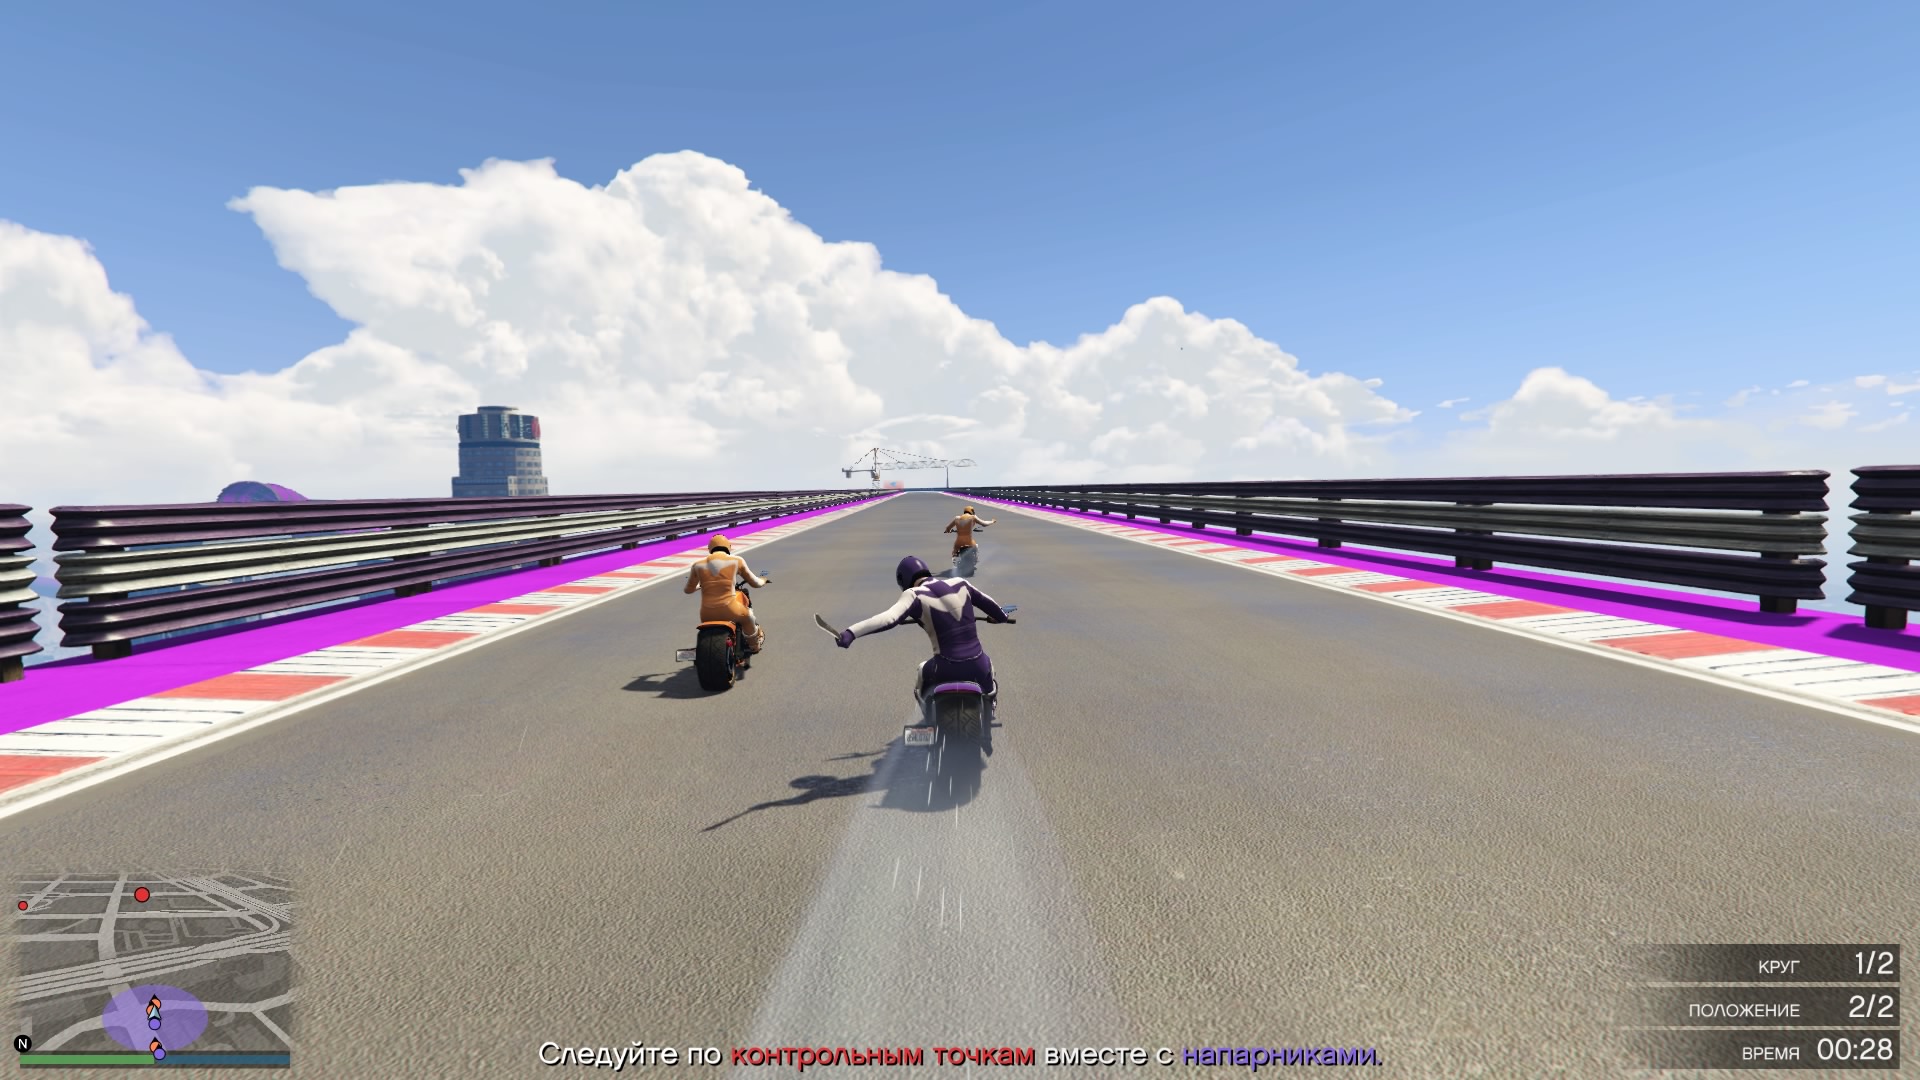 Road Rash в GTA Online — мотоциклетный режим противоборства «Воздушный карман»